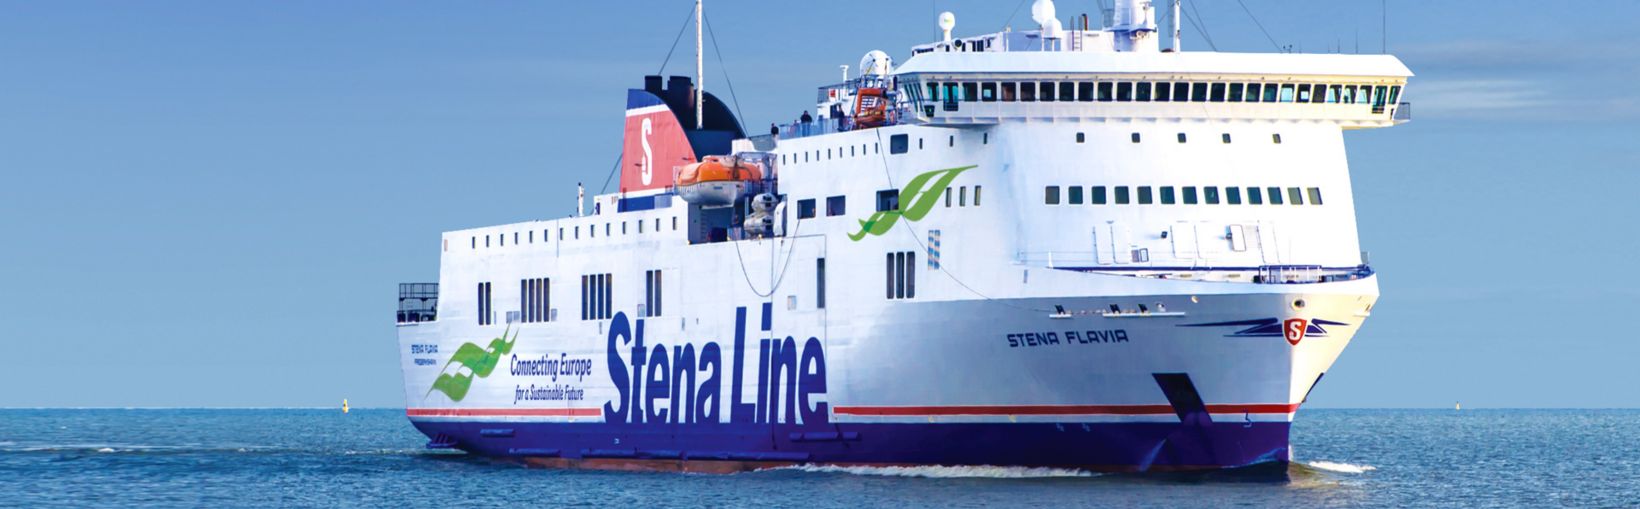 Stena Flavia | Ferry to Ventspils and Nynäshamn | Stena Line